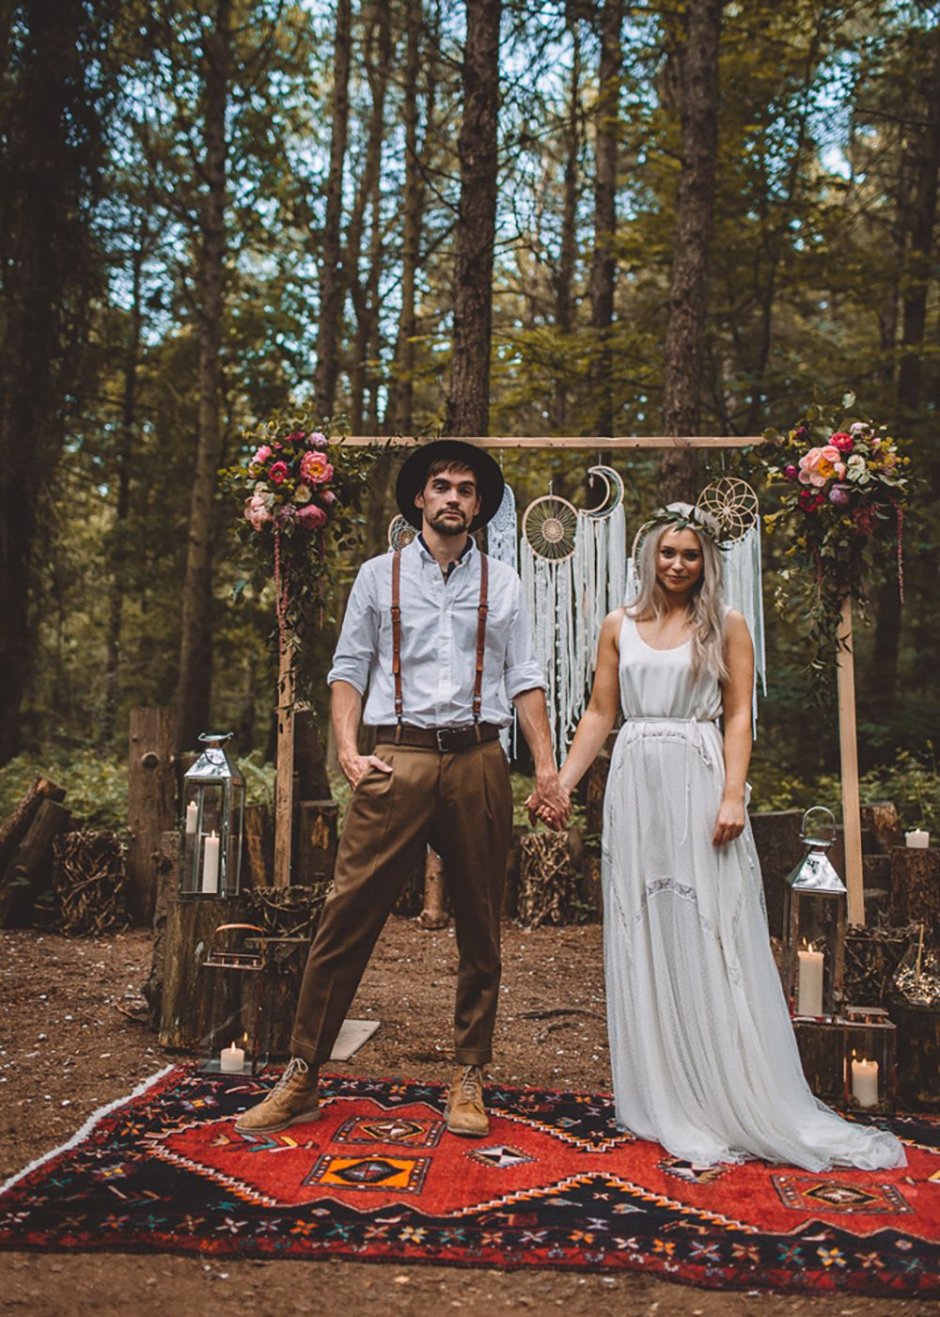 Woodland + бохо стиль свадьбы